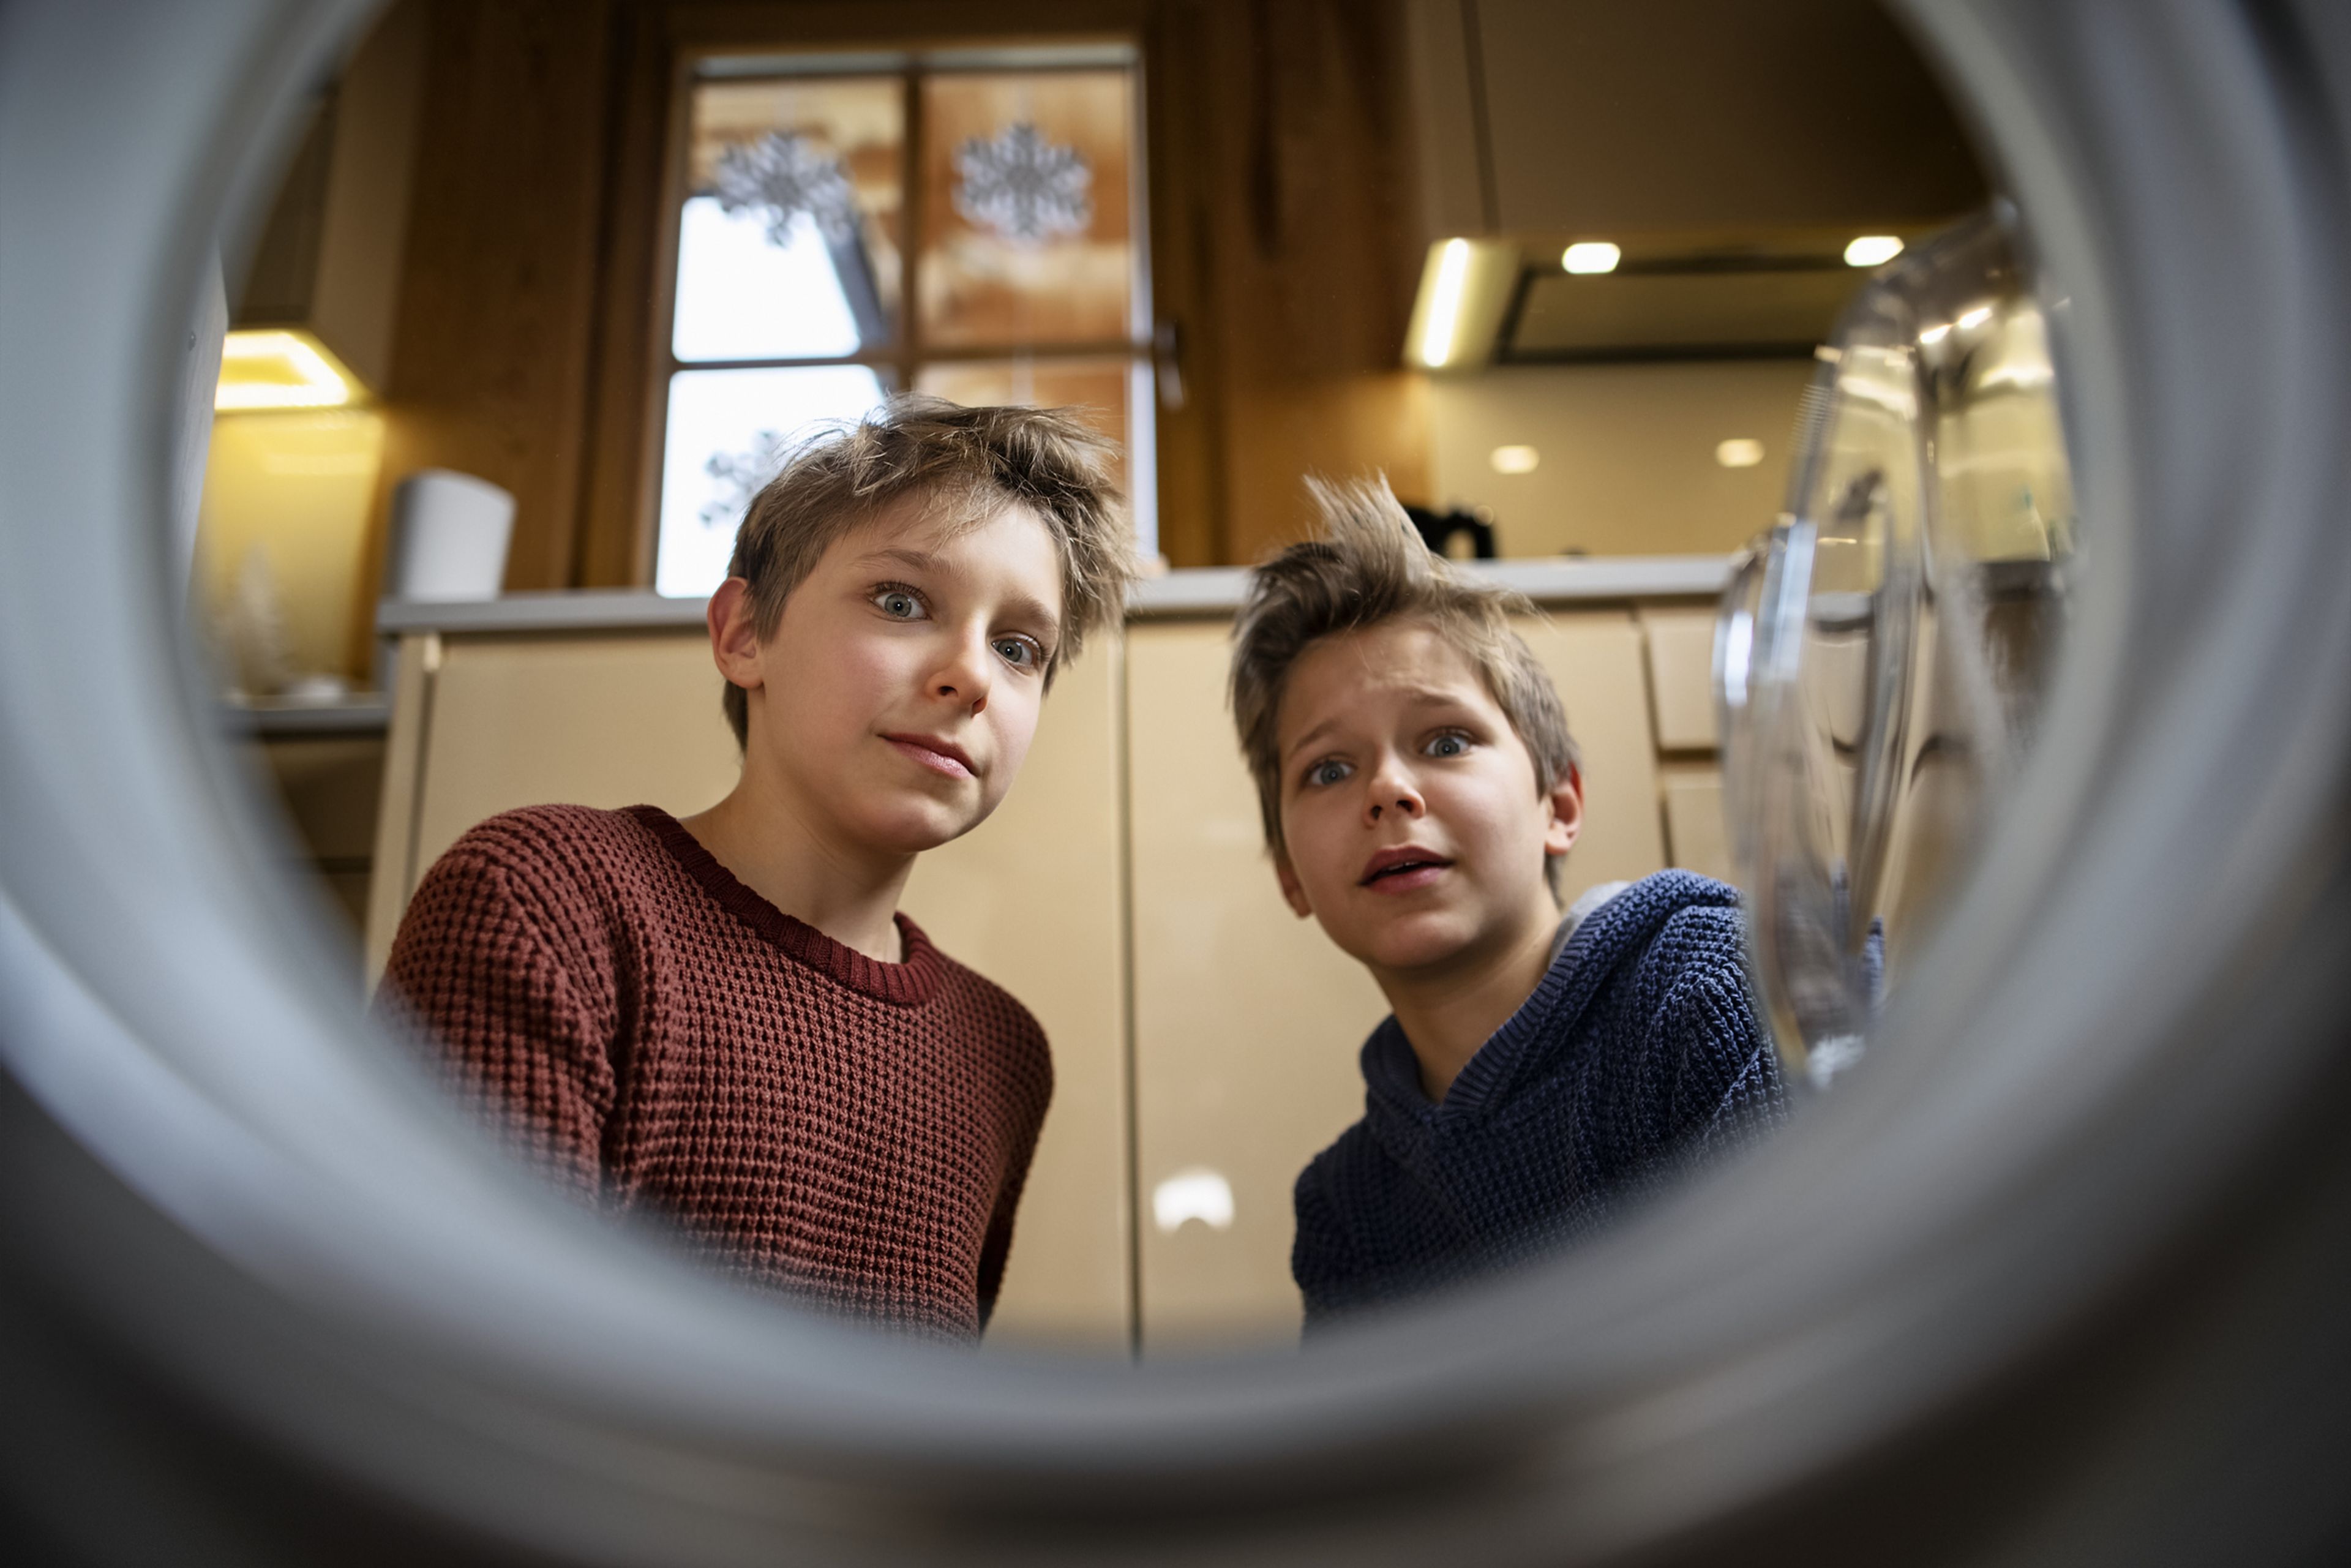 2 chicos miran con asombro el interior de una nevera.